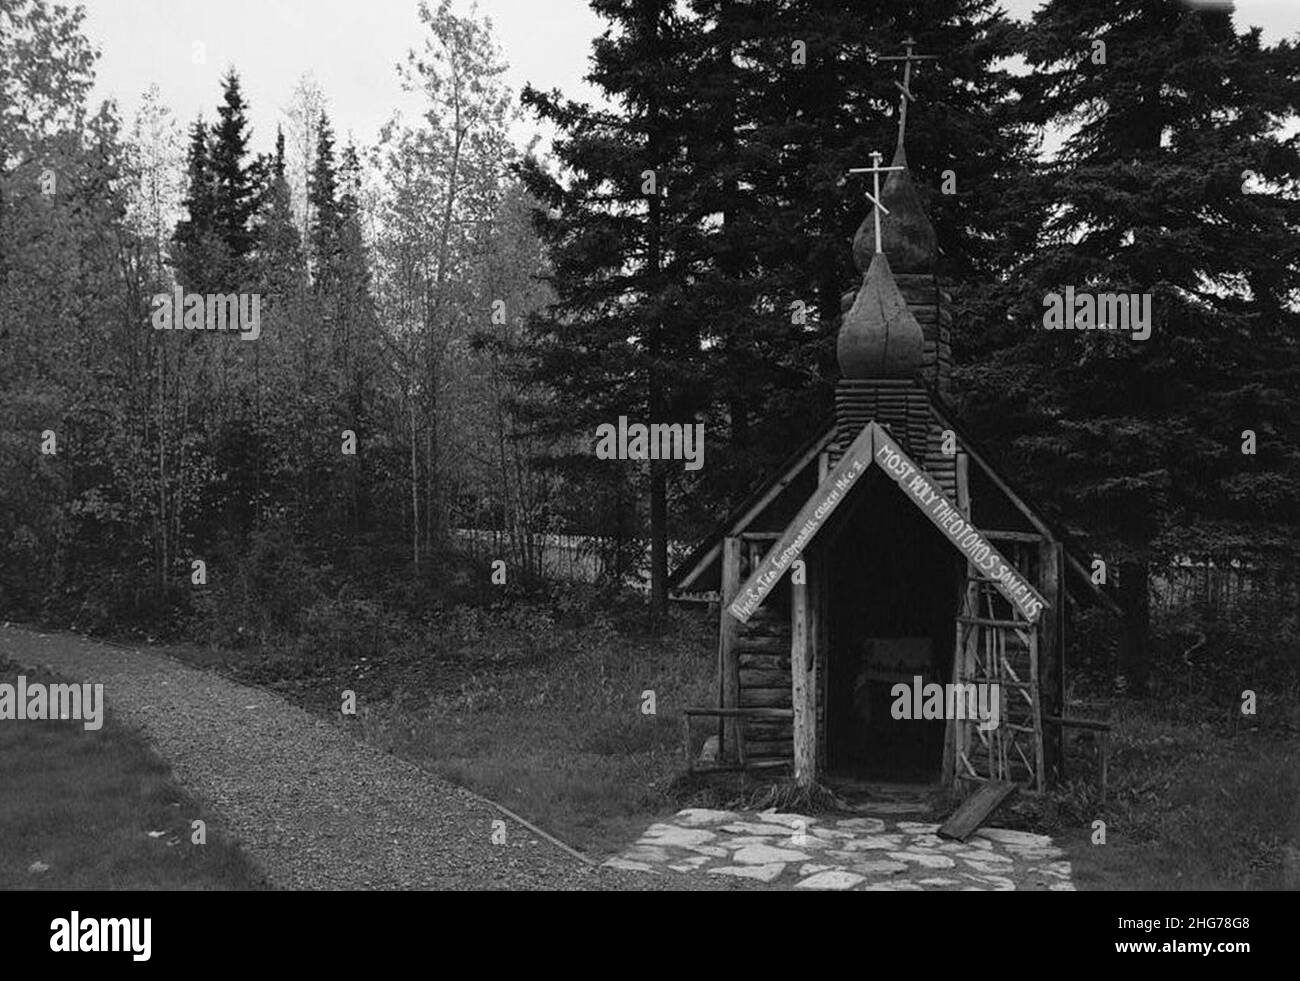 Shrine to Theotokos, Eklutna, Anchorage, AK. Stock Photo